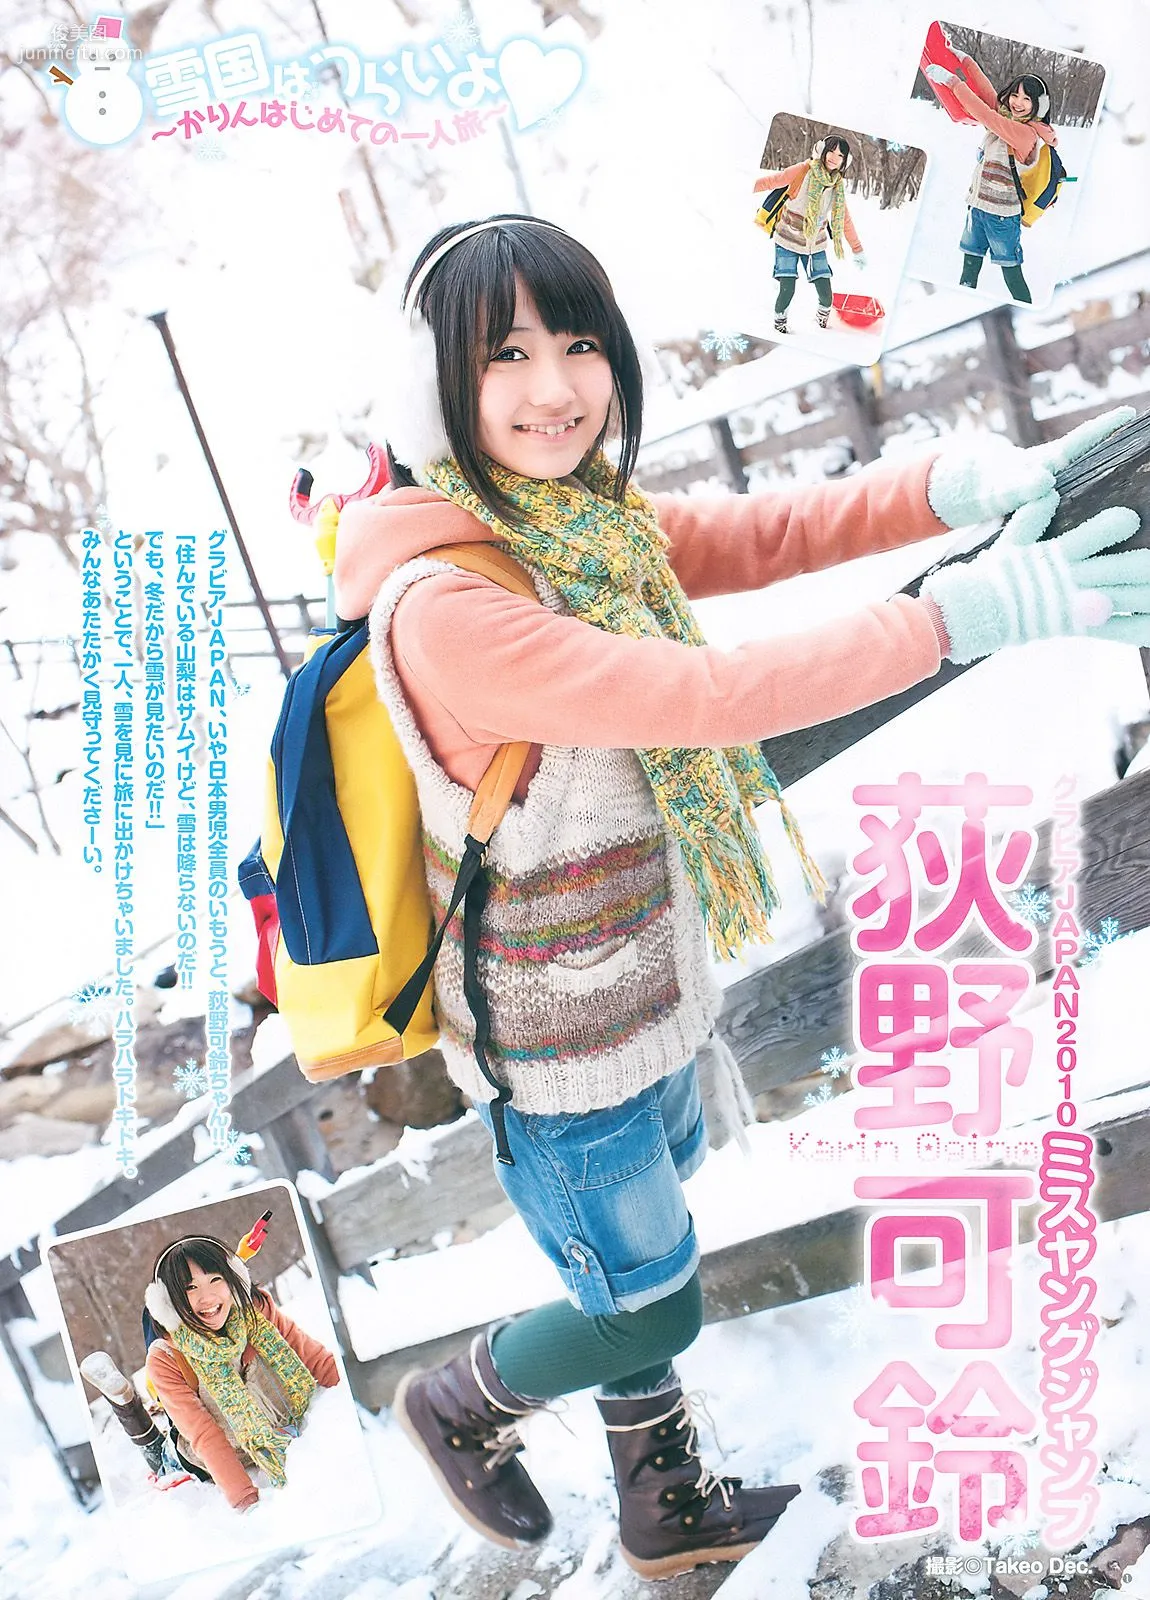 渡り廊下走り隊7 杉ありさ 荻野可鈴 [Weekly Young Jump] 2011年No.10 写真杂志14